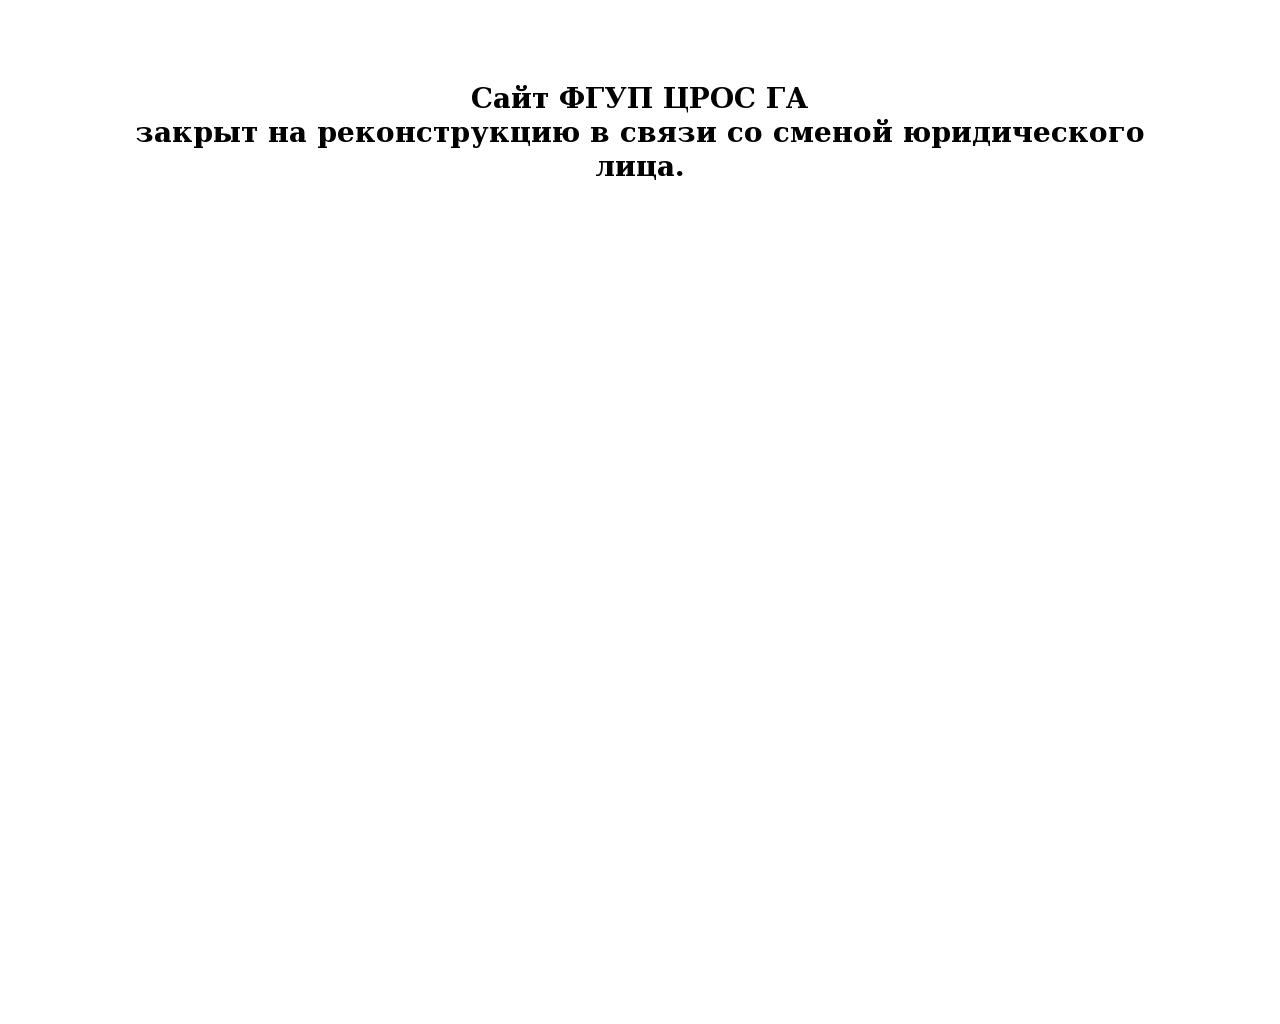 Изображение сайта civilavia.ru в разрешении 1280x1024